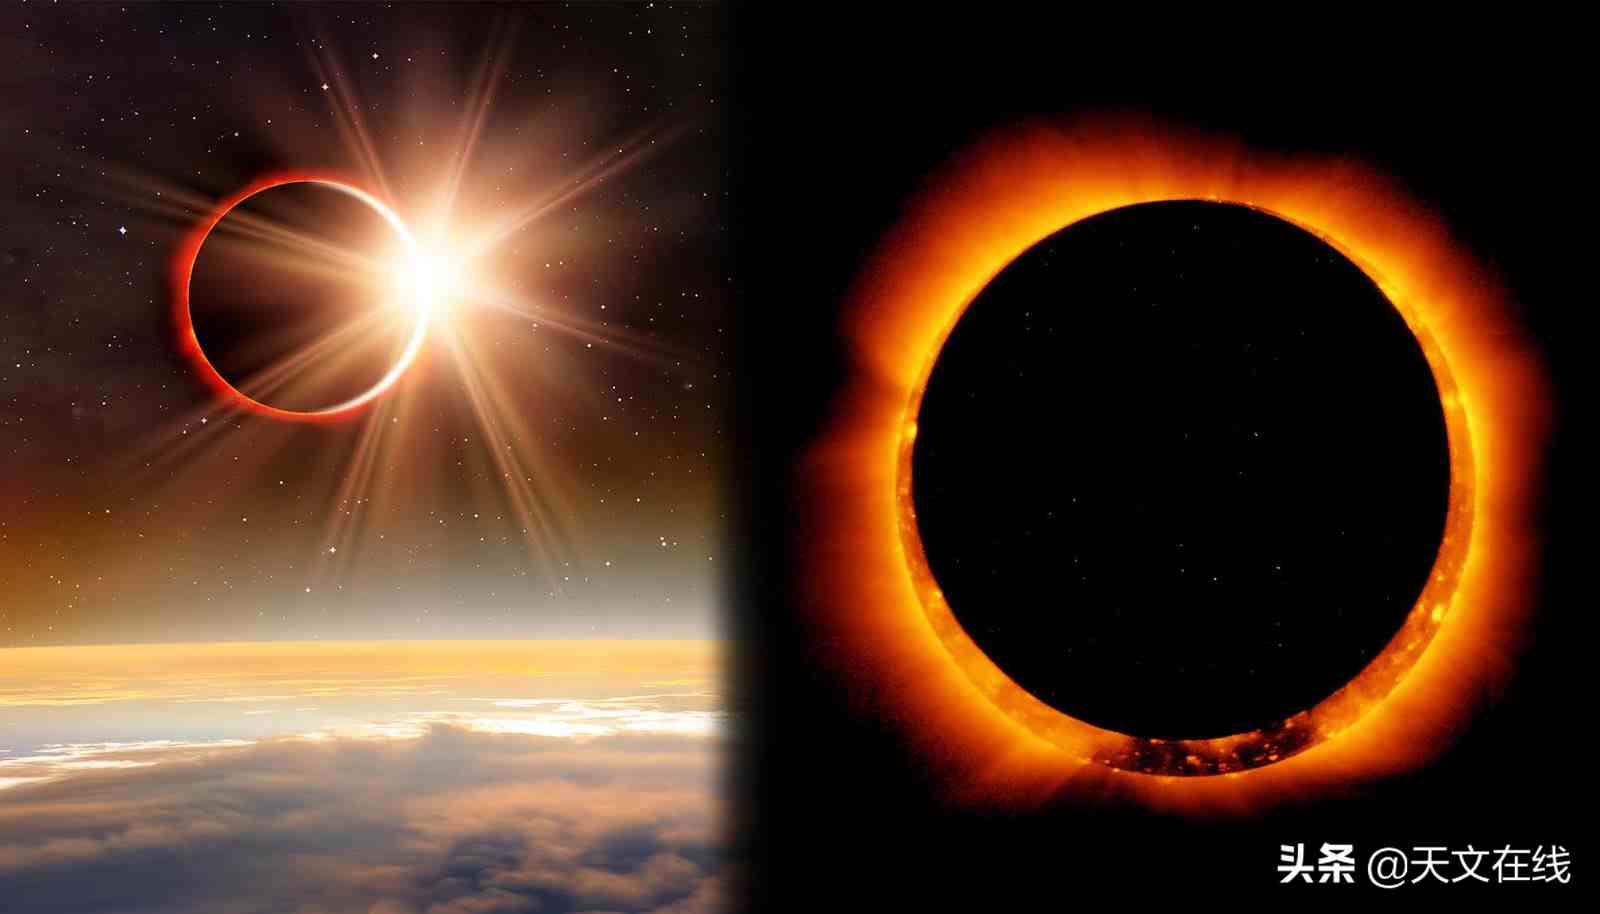 什么是日环食？它和日全食、日偏食有什么不同？